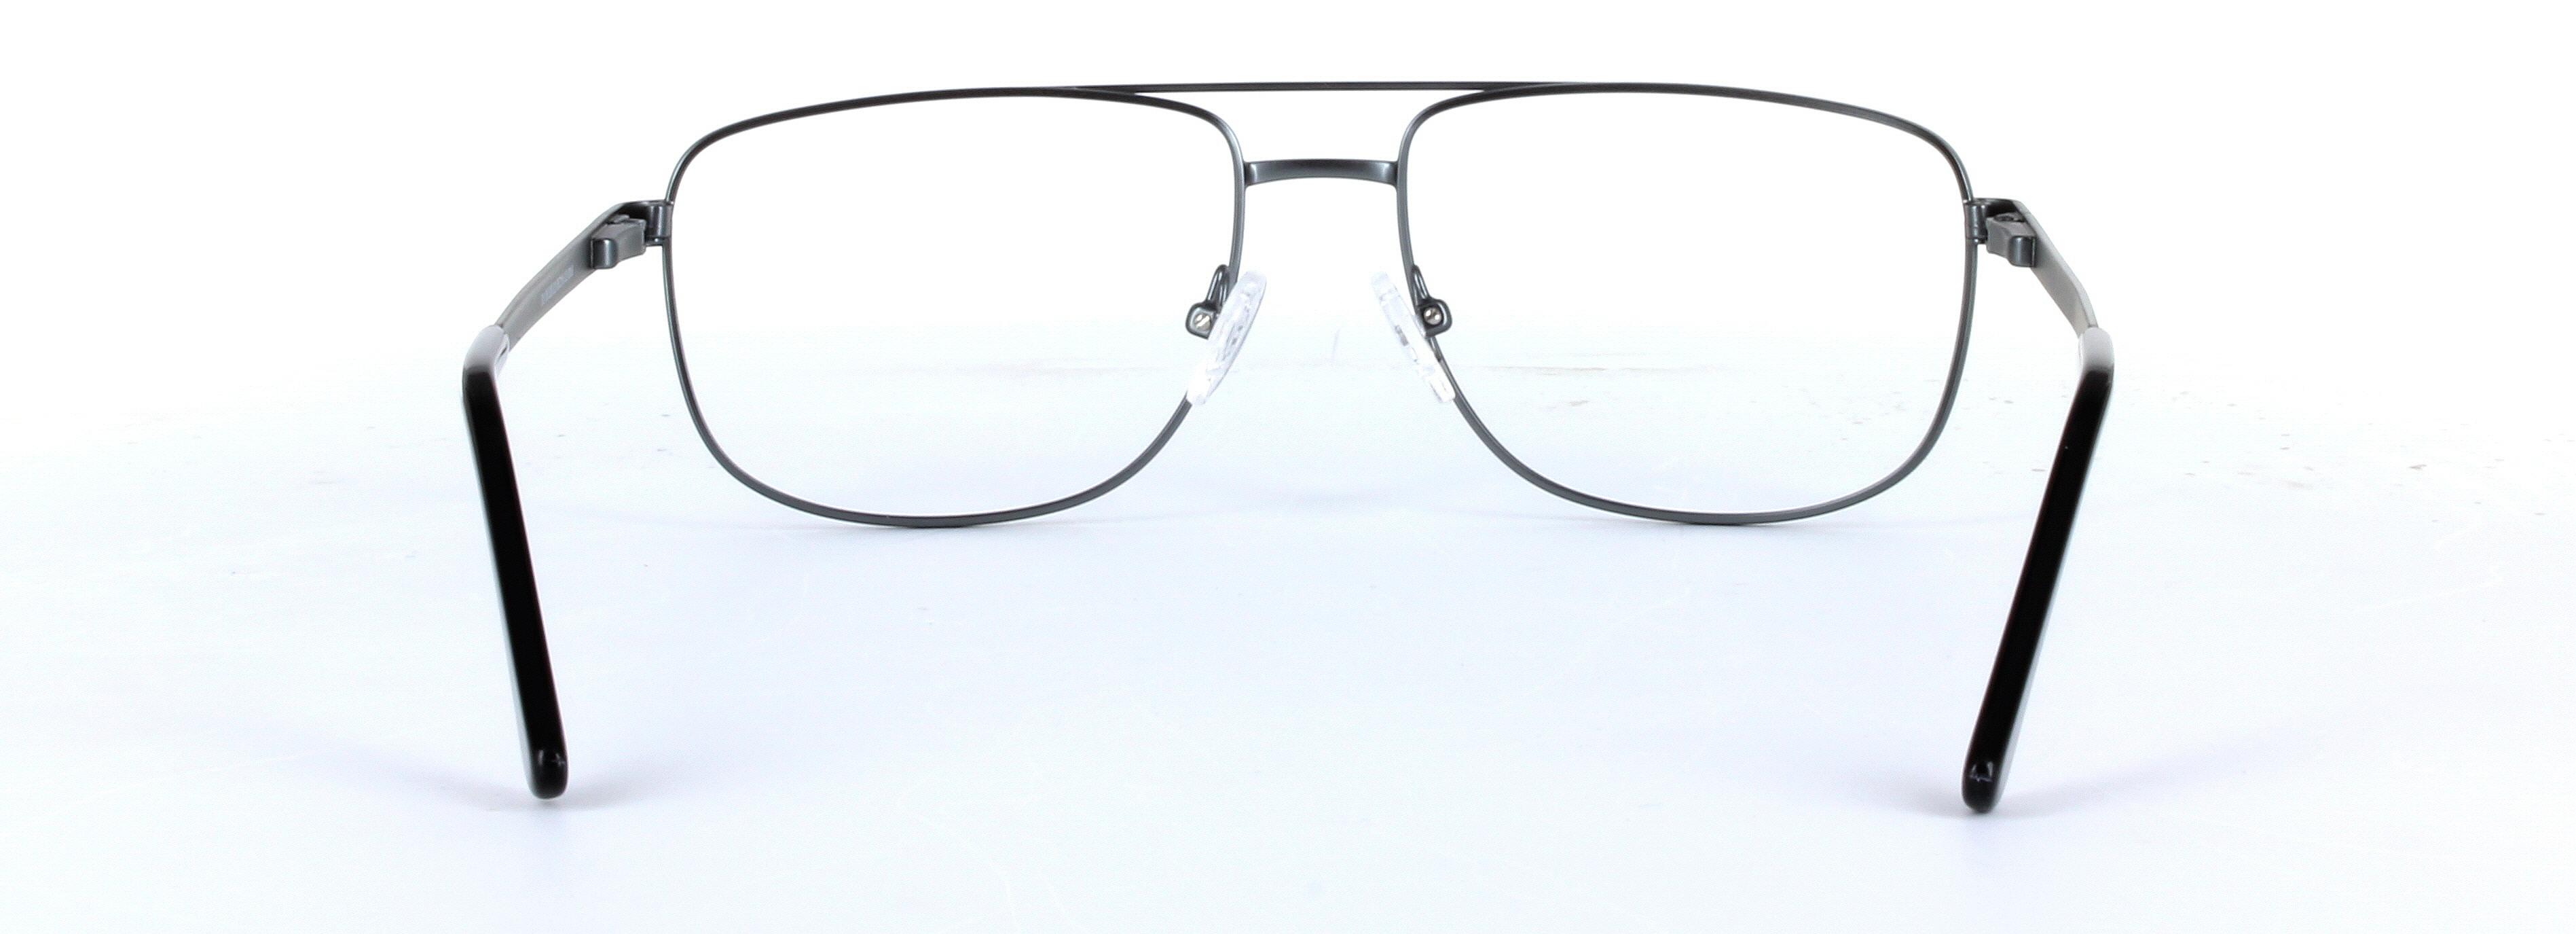 Marlowe Gunmetal Full Rim Oval Metal Glasses - Image View 3